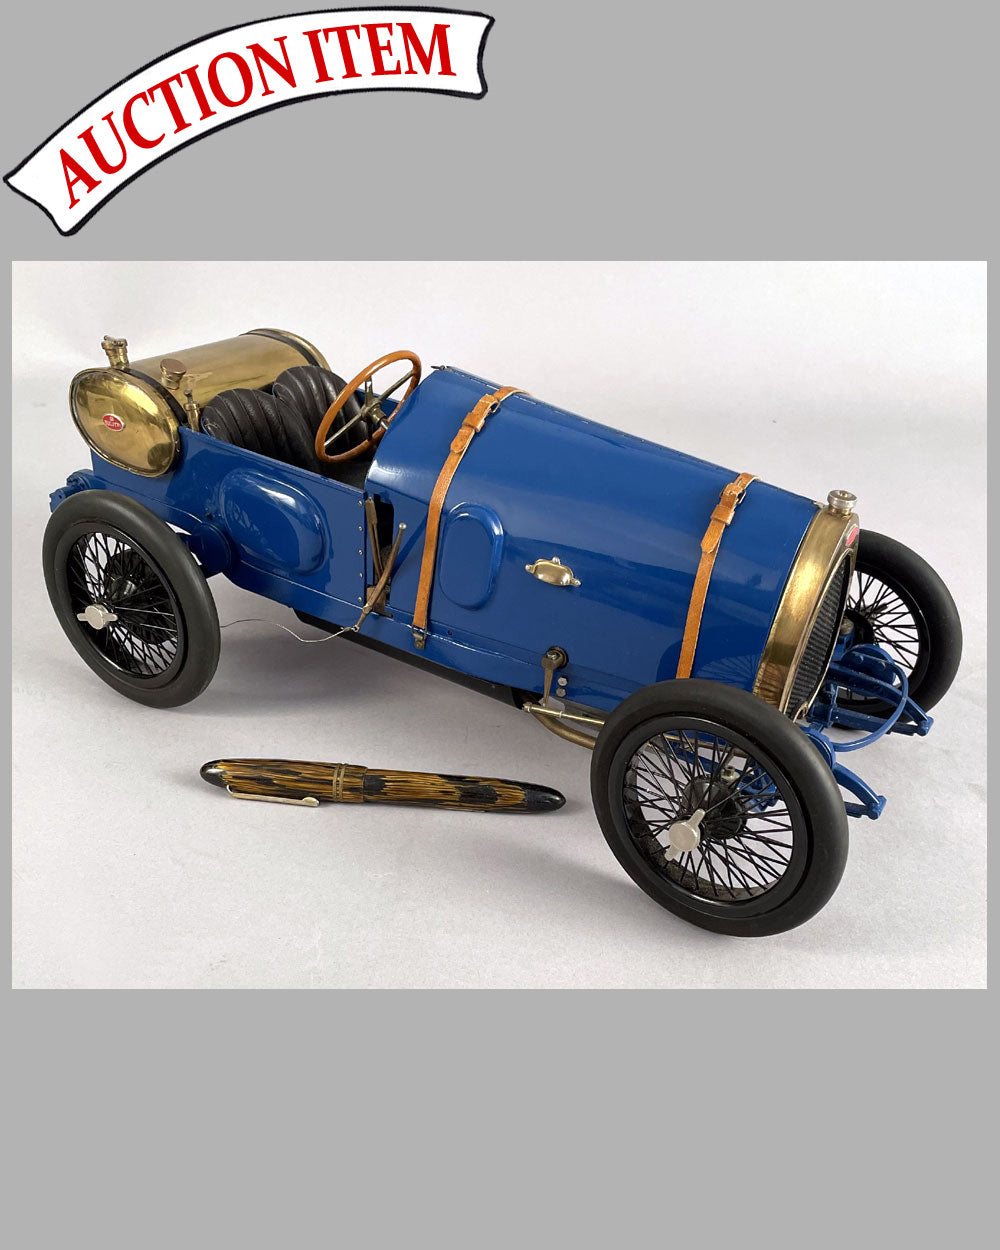 Bugatti Brescia scratch built model by Marc Antonietti and Henri Bossac